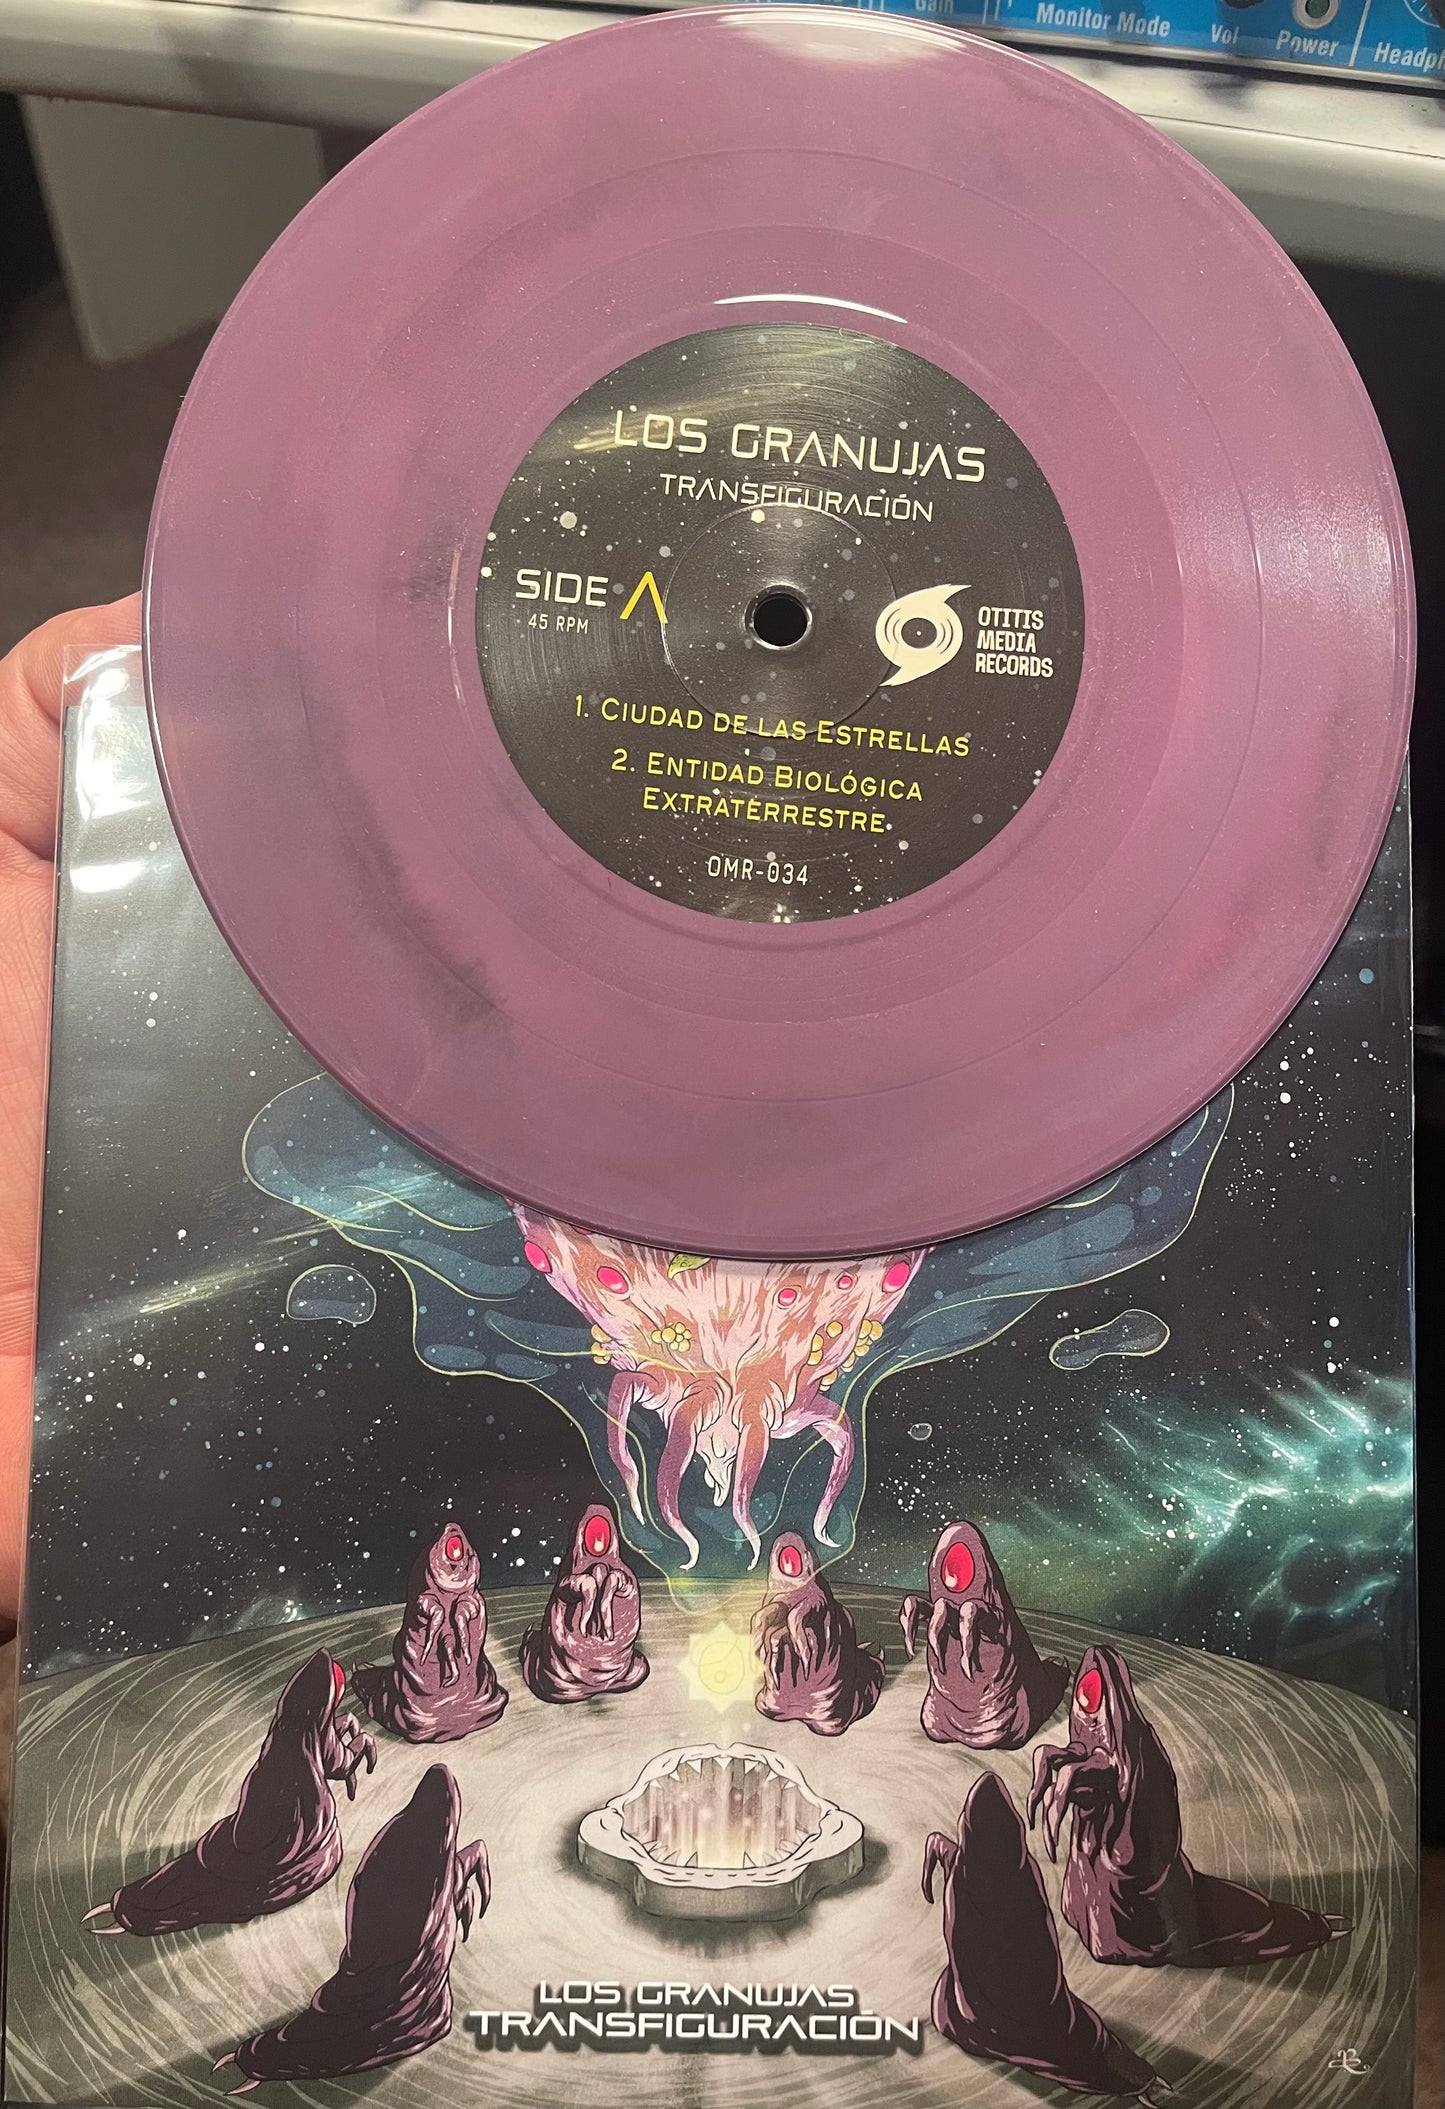 OMR-034 Los Granujas “Transfiguracion” 7 inch EP (Colored Vinyl)